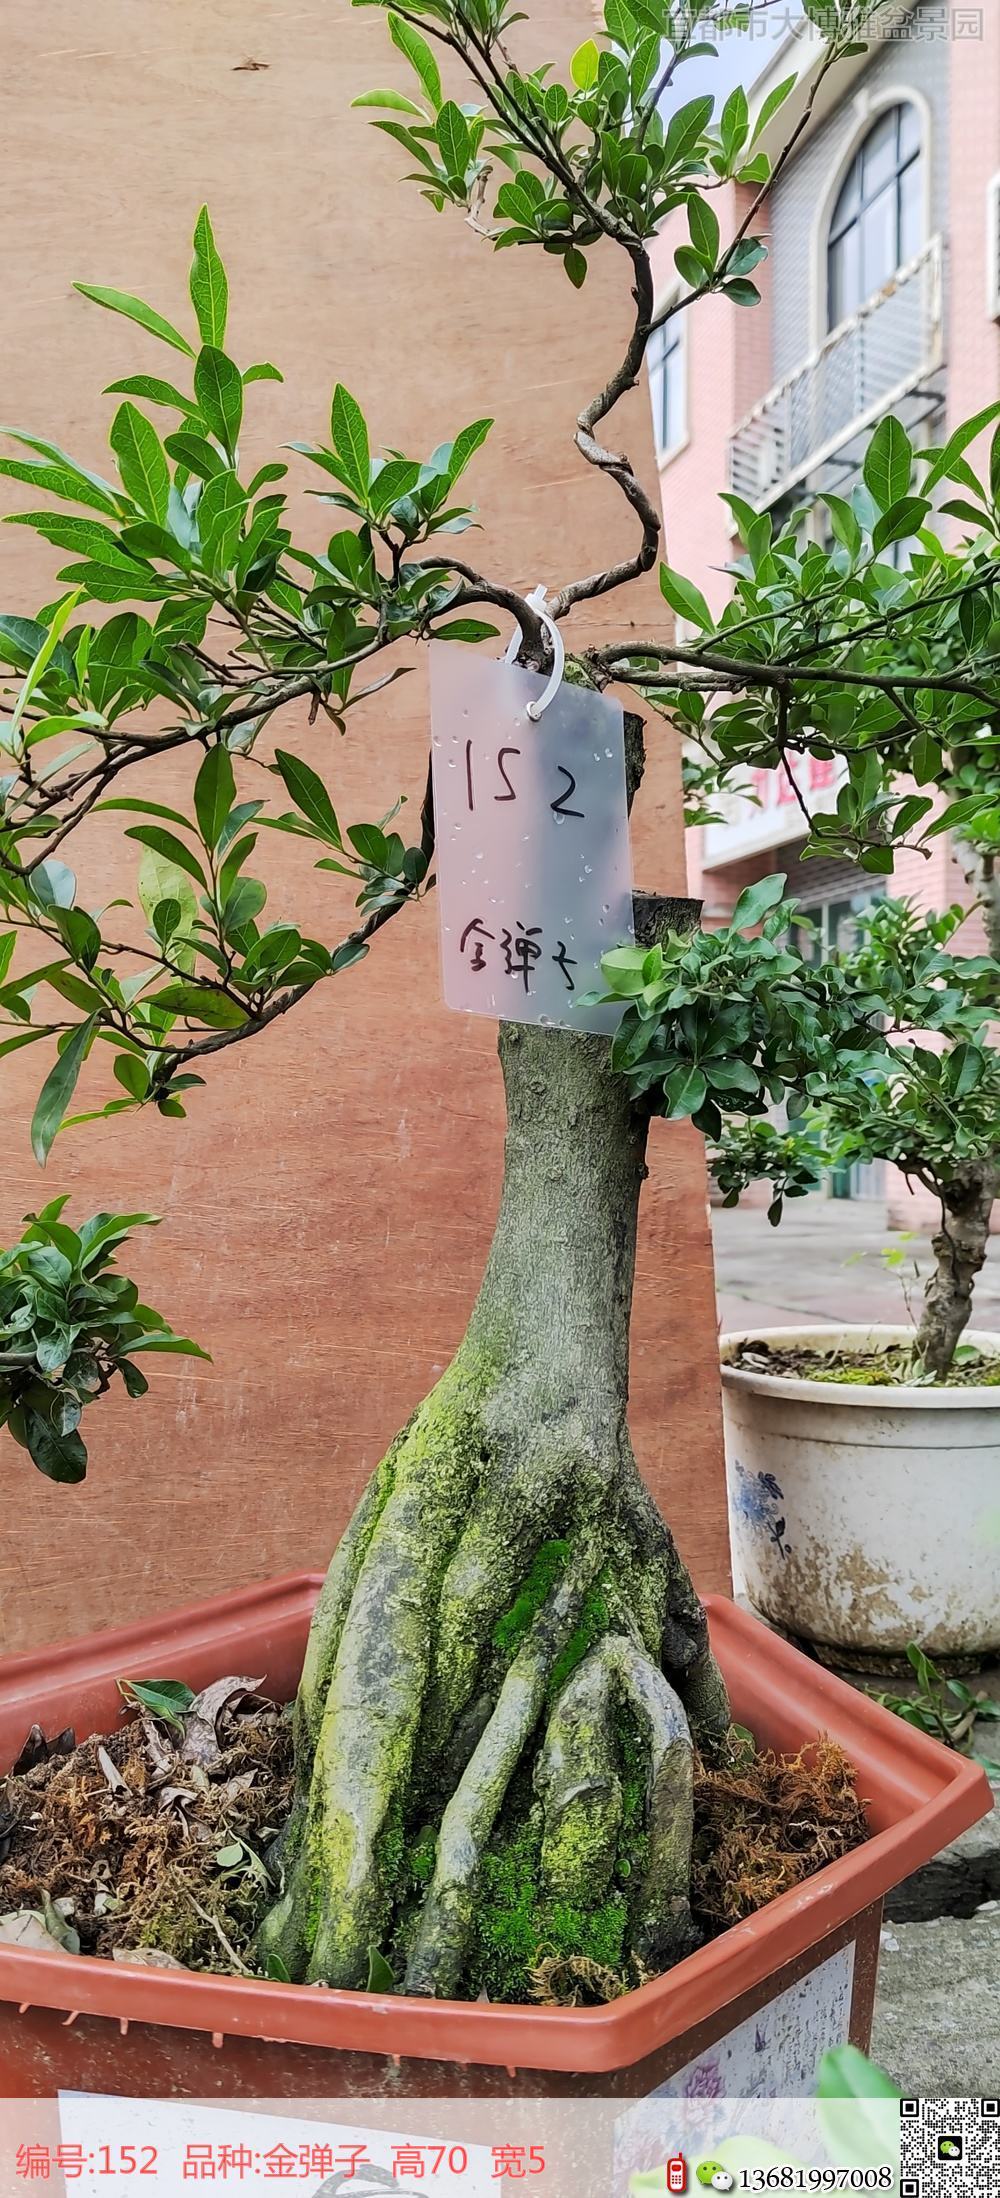 矮霸152号老鸦柿弹子树桩盆景图片上海老鸦柿弹子盆景市场